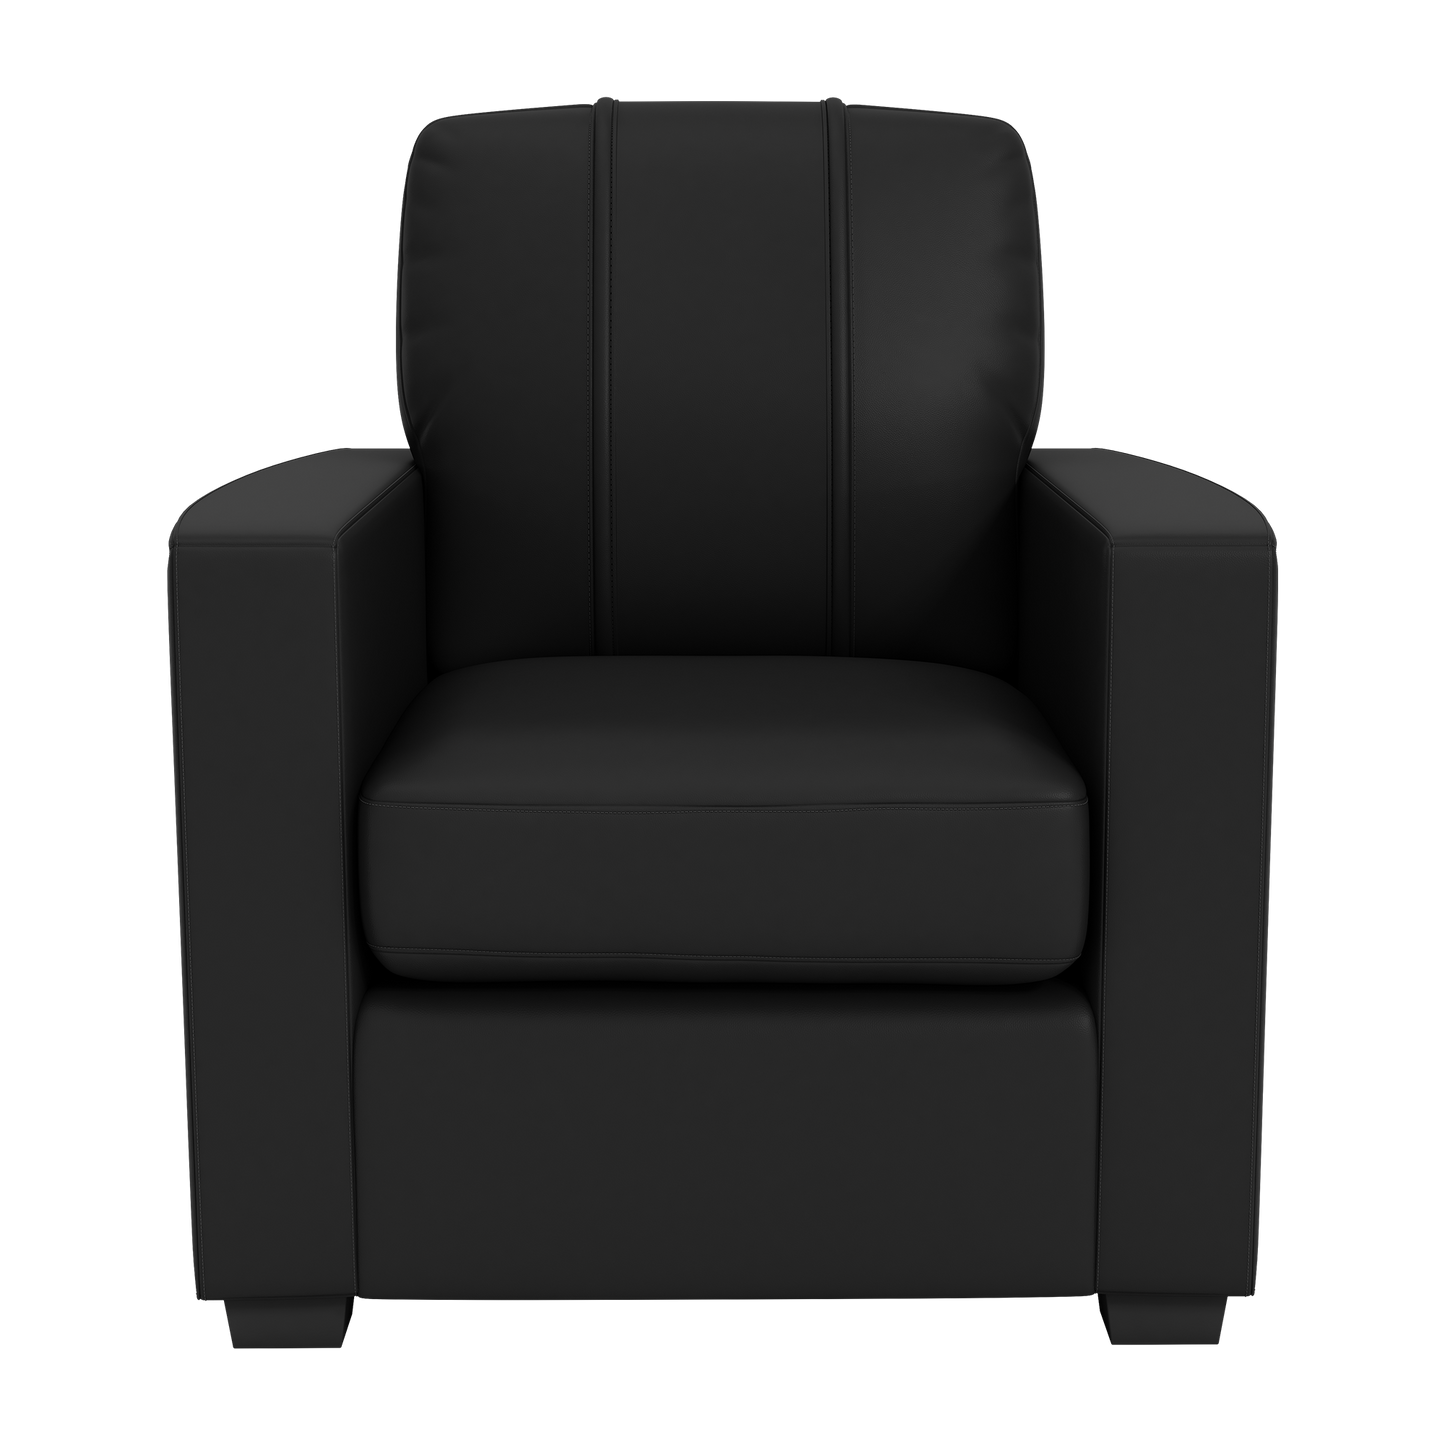 Silver Club Chair with Iowa Hawkeyes Logo